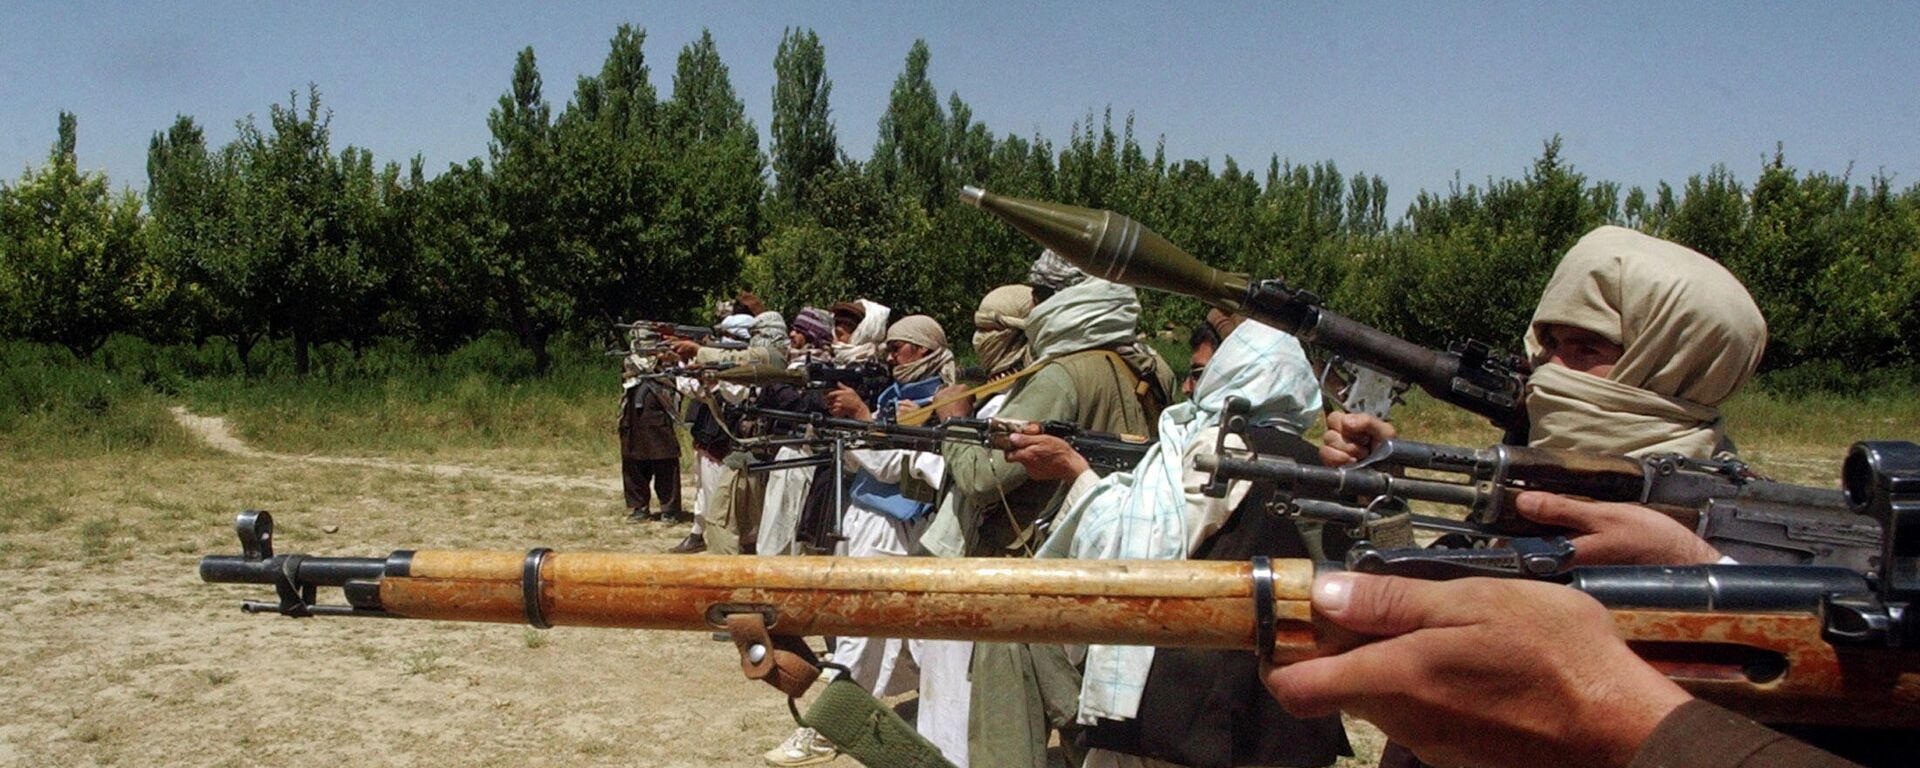 Милитанти покрета Талибан у Авганистану - Sputnik Србија, 1920, 06.09.2021